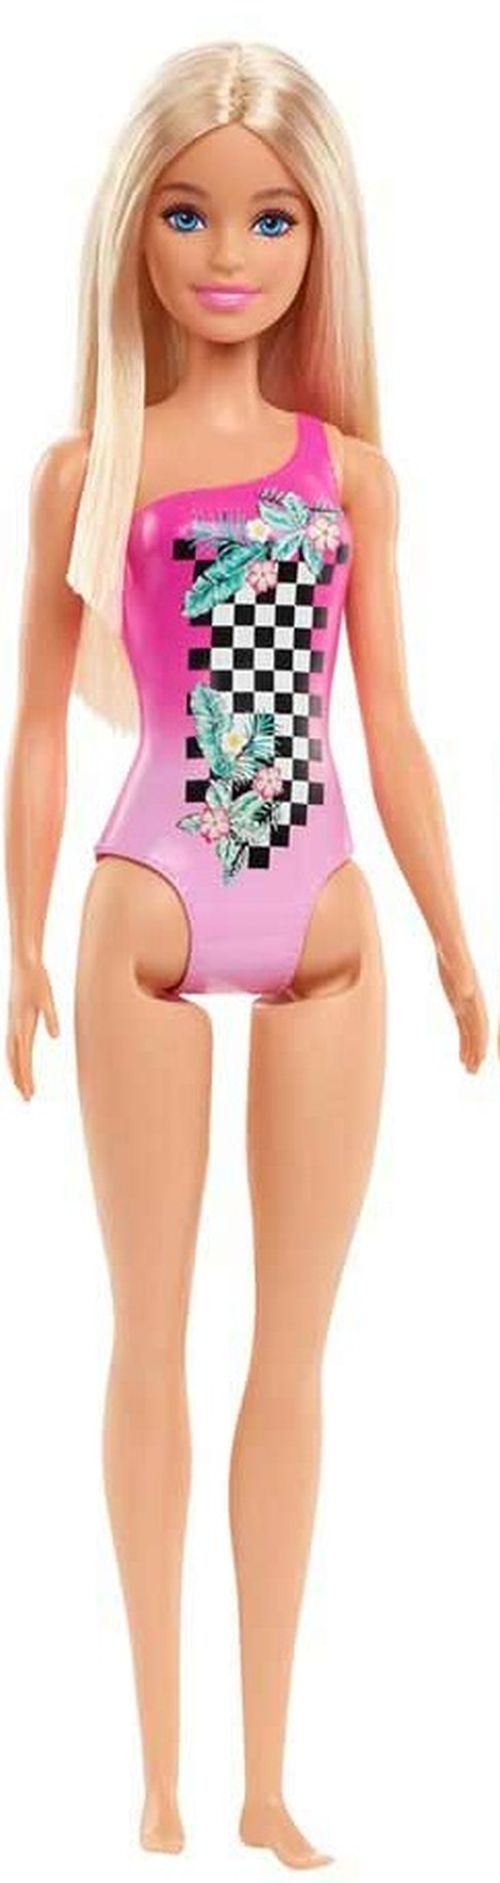 MATTEL Barbie Beach Doll In Pink Swimsuit - DOLLS